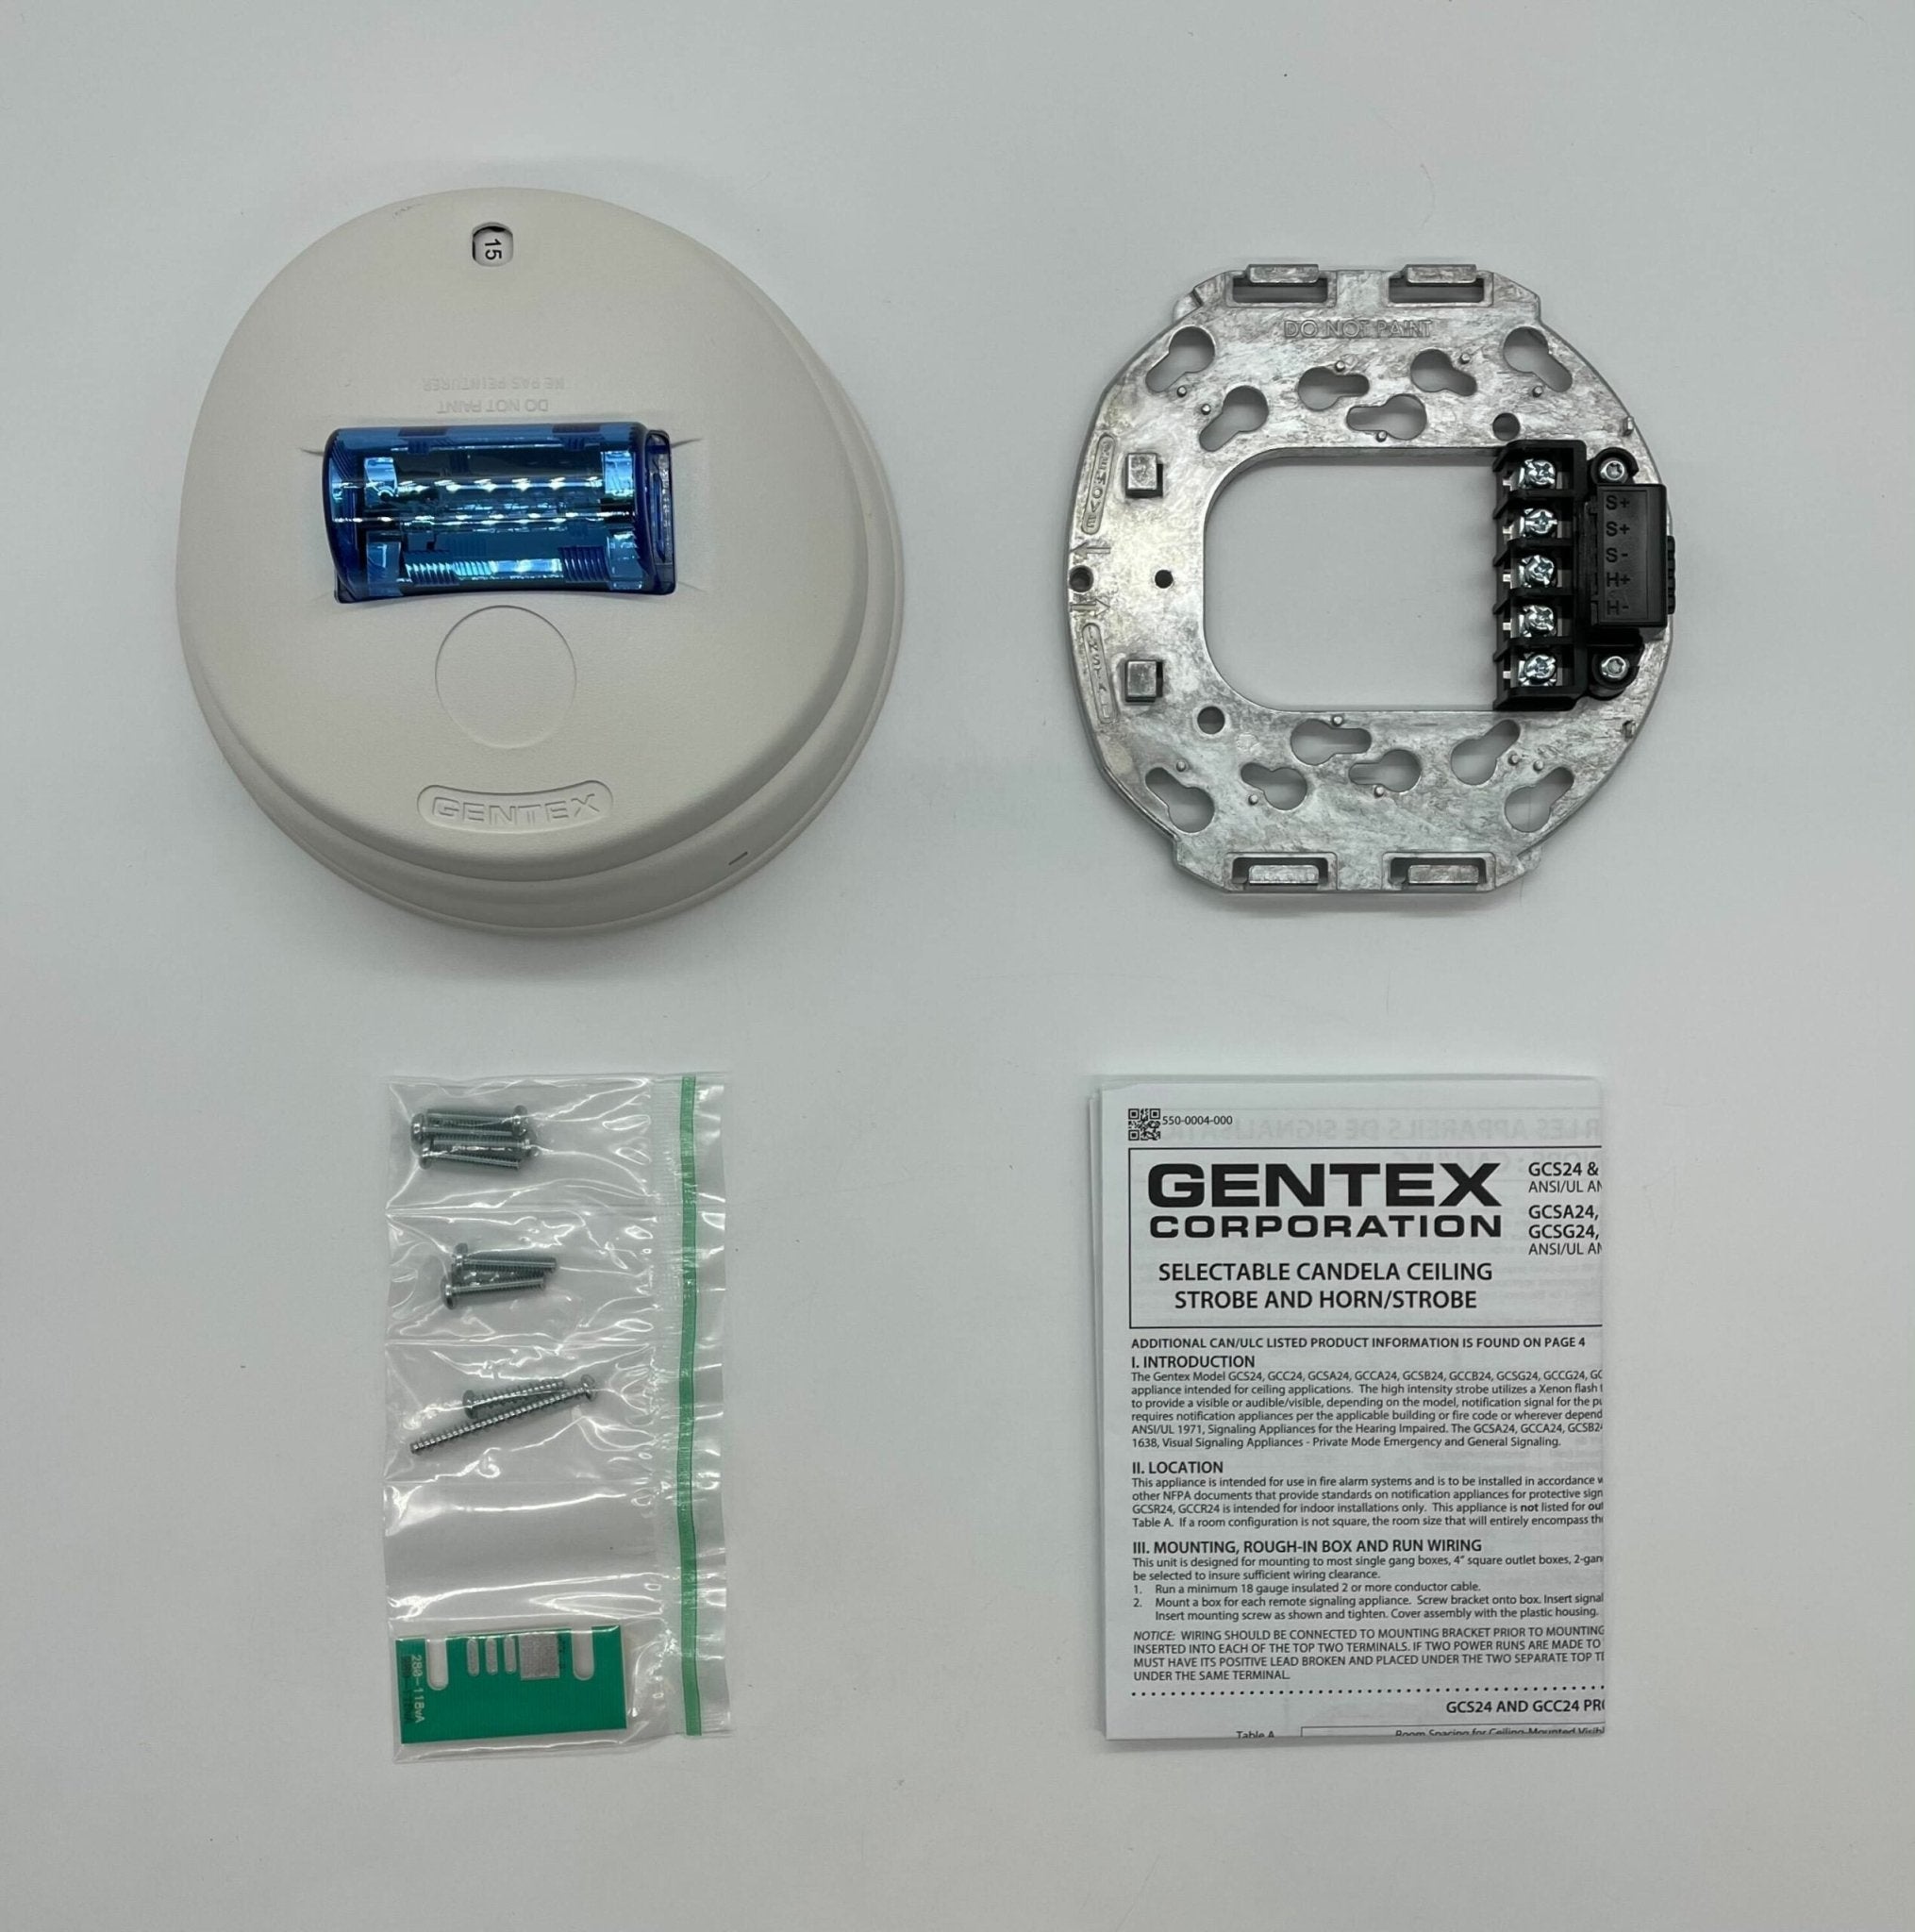 Gentex GCSB24PCW - The Fire Alarm Supplier